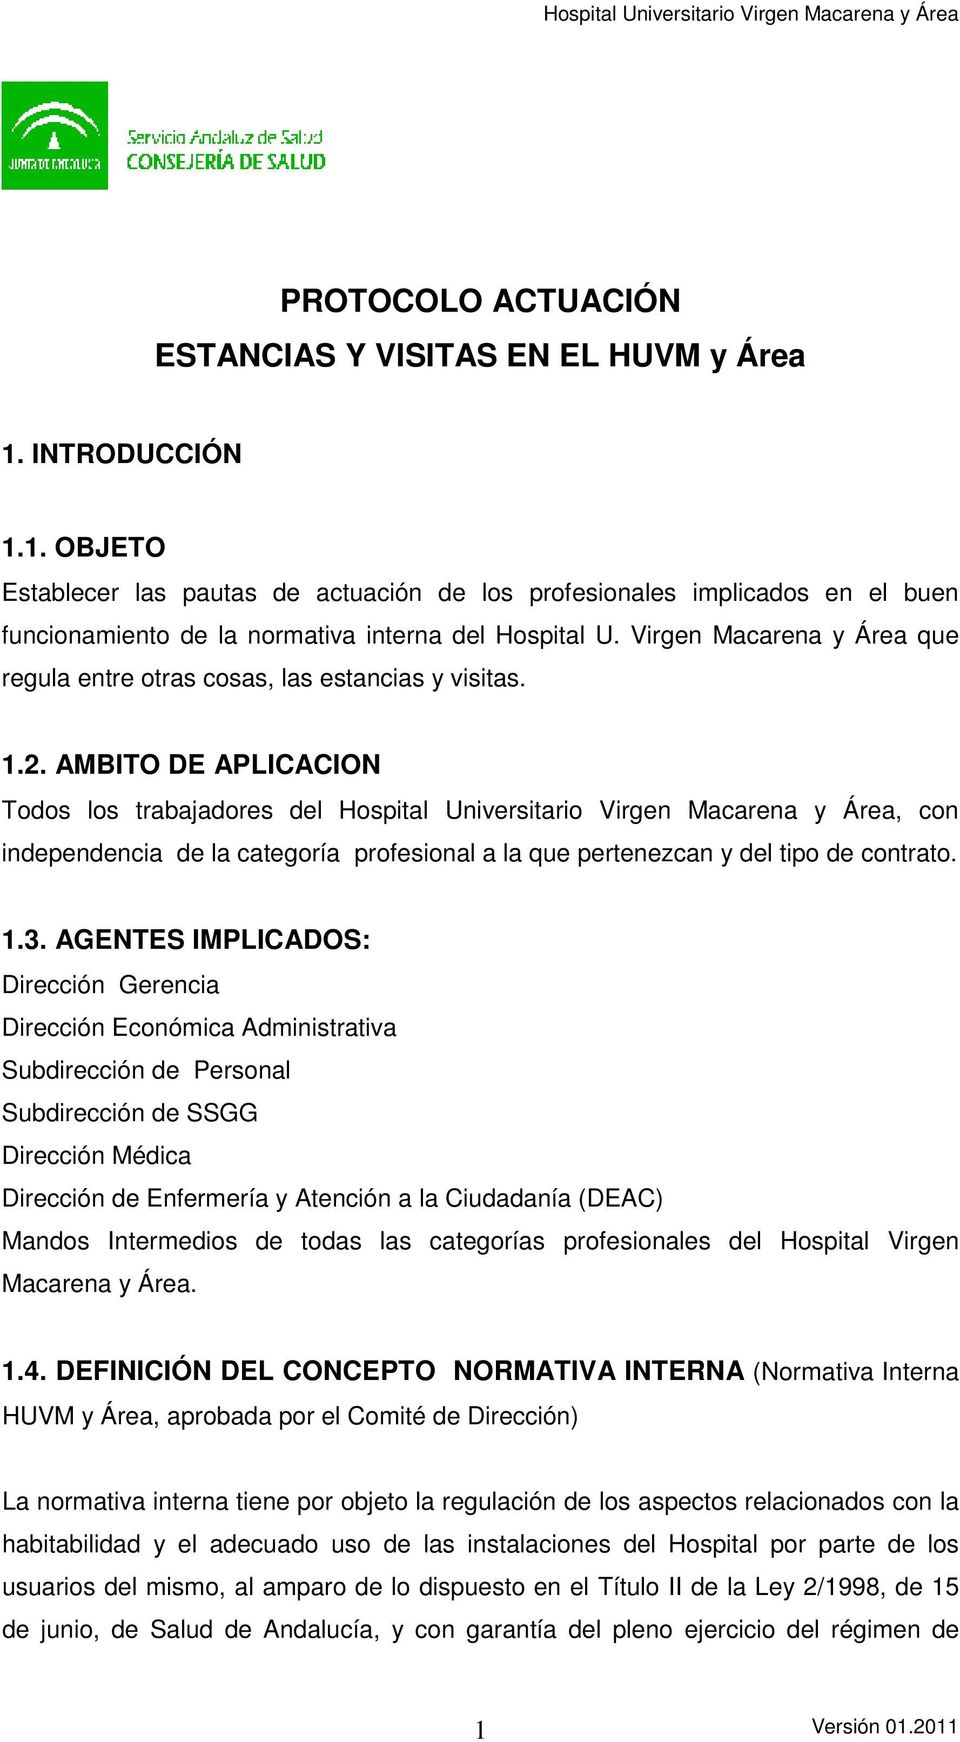 AMBITO DE APLICACION Todos los trabajadores del Hospital Universitario Virgen Macarena y Área, con independencia de la categoría profesional a la que pertenezcan y del tipo de contrato. 1.3.